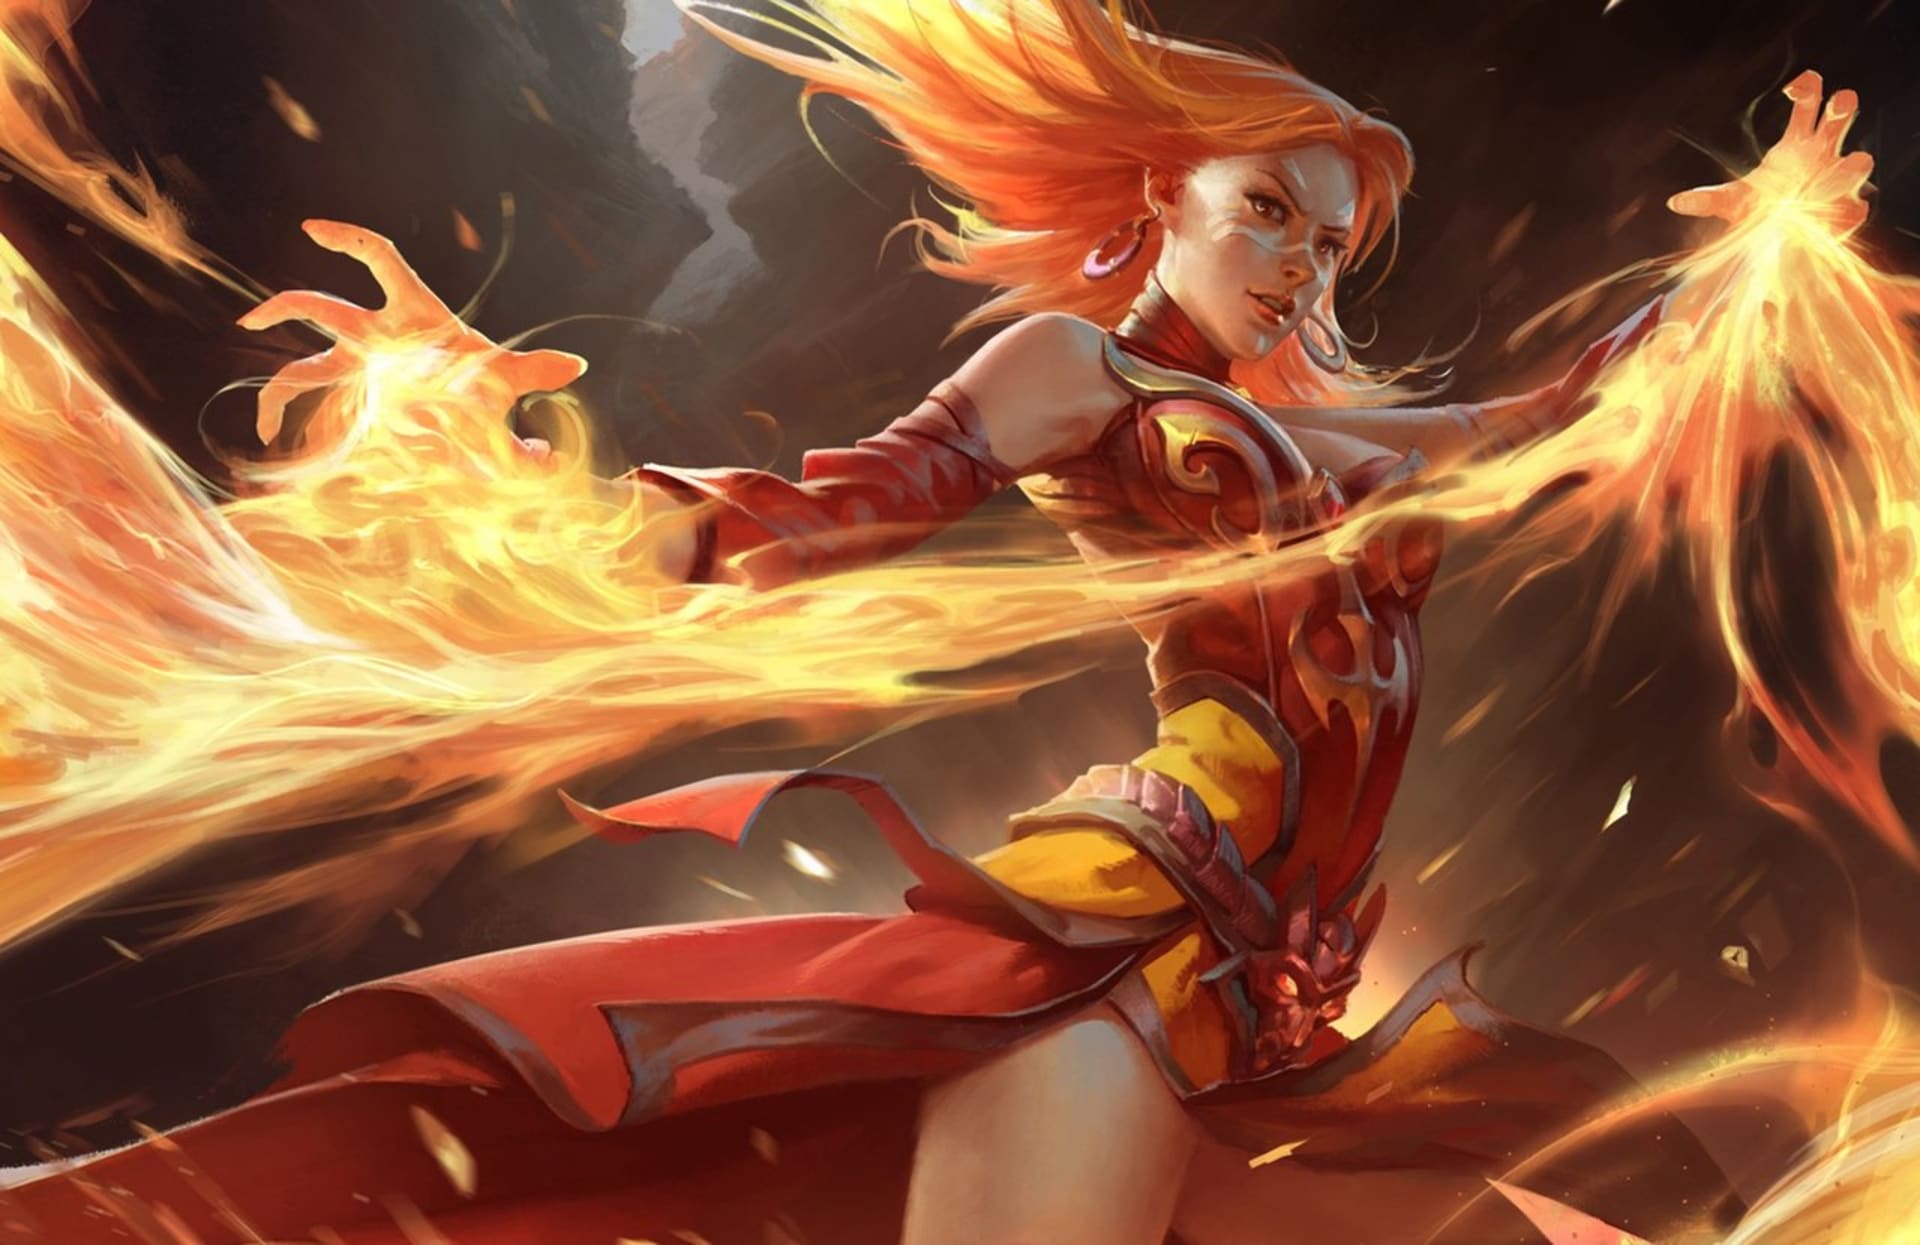 Lina ohněm oděná